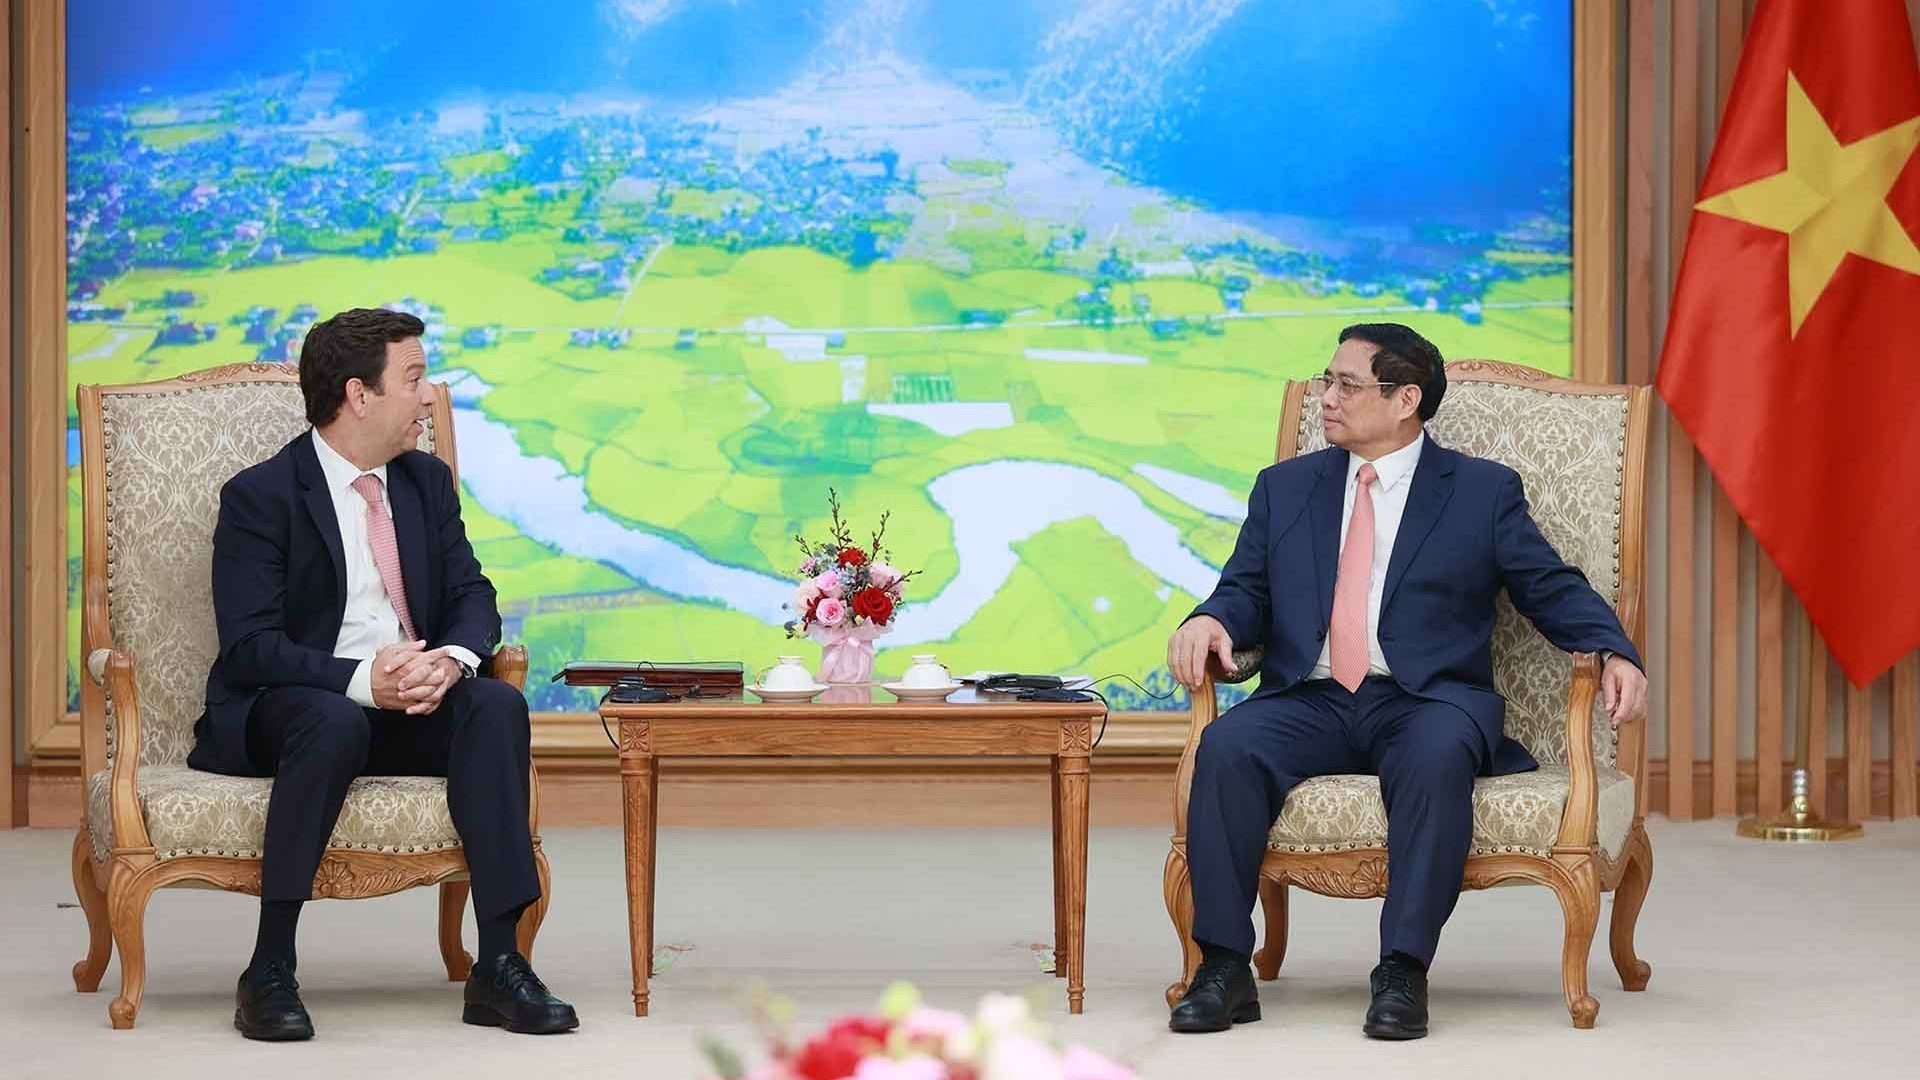 Thủ tướng Phạm Minh Chính tiếp Chủ tịch Tập đoàn Abbott, Hoa Kỳ